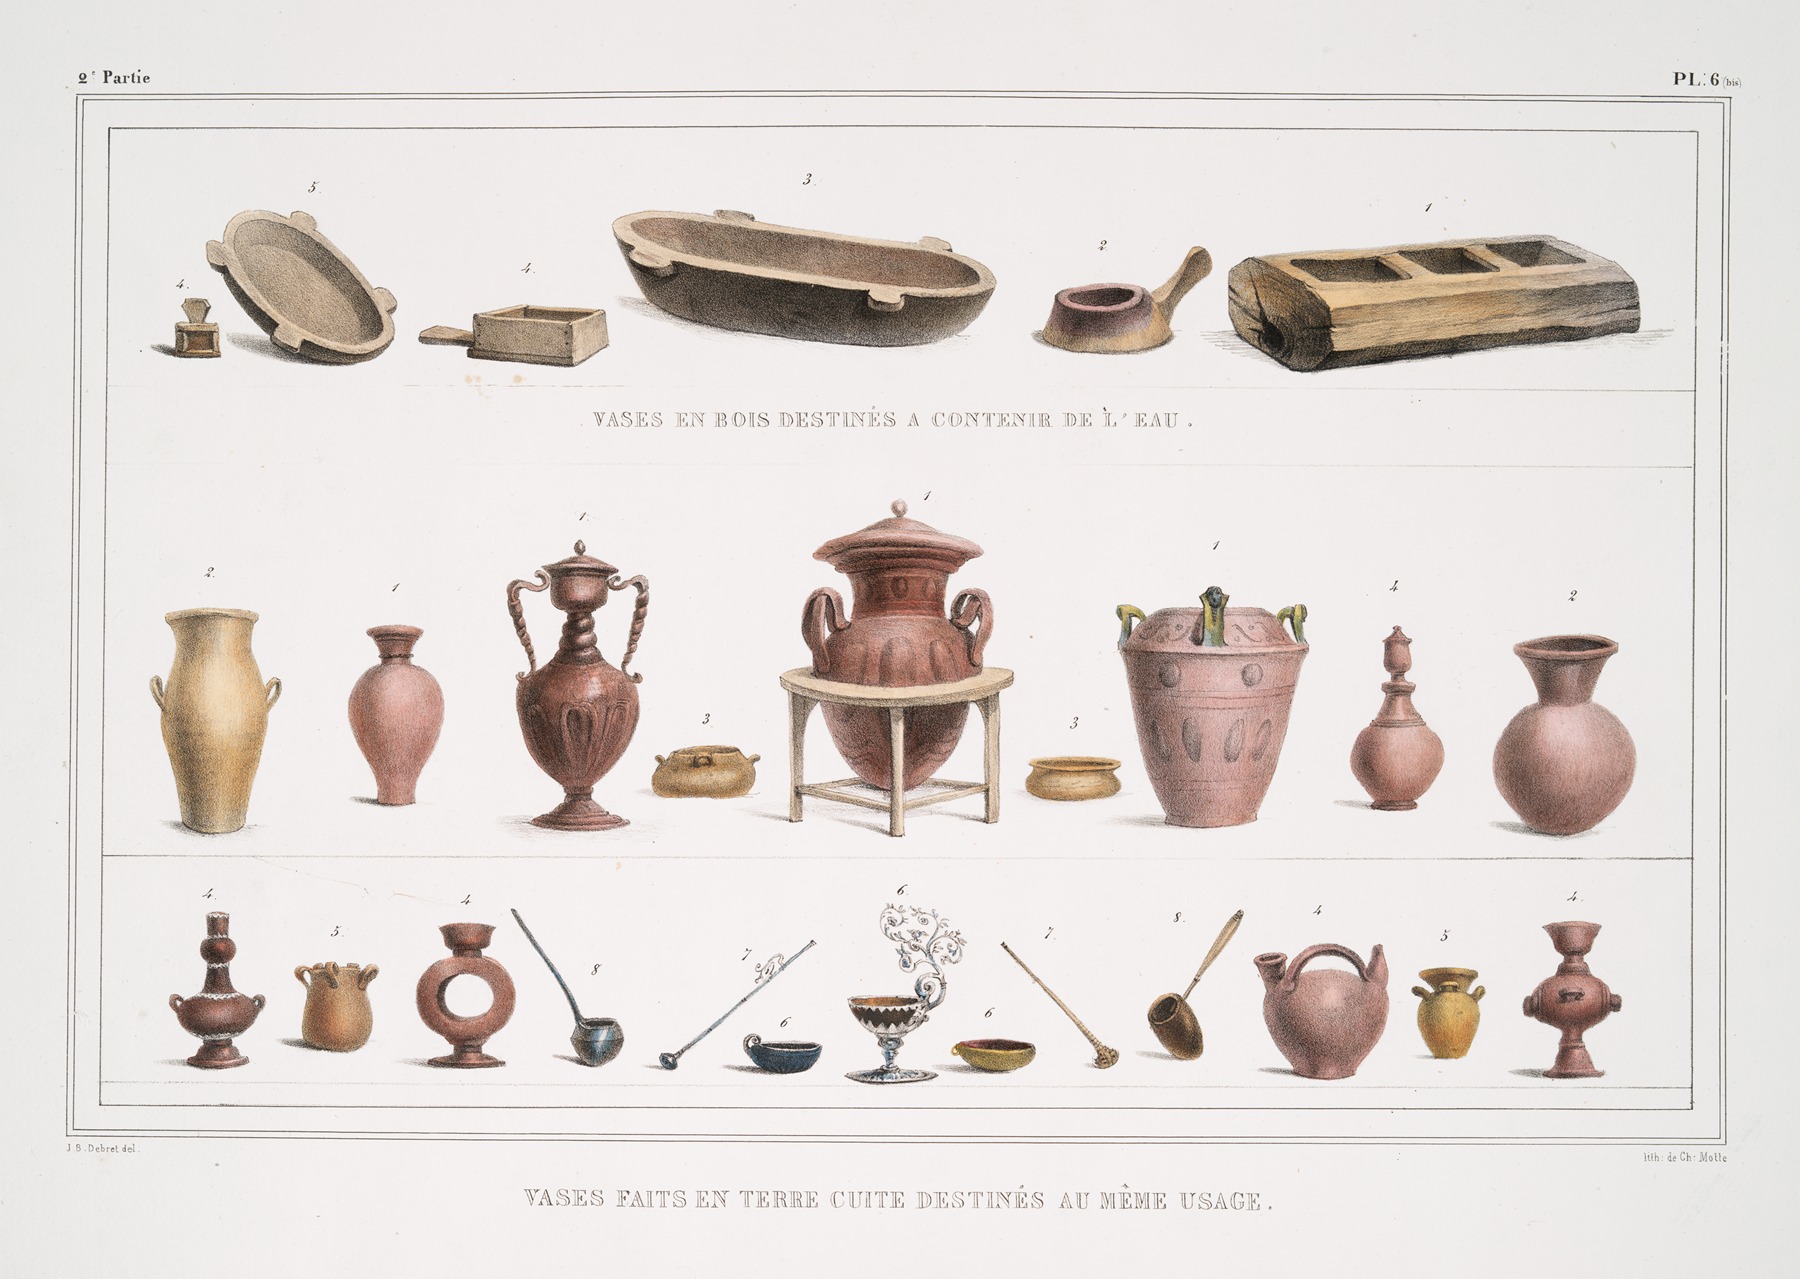 Jean Baptiste Debret - Vases en bois destinés à contenir de l’eau; Vases faits en terre cuite destinés au même usage